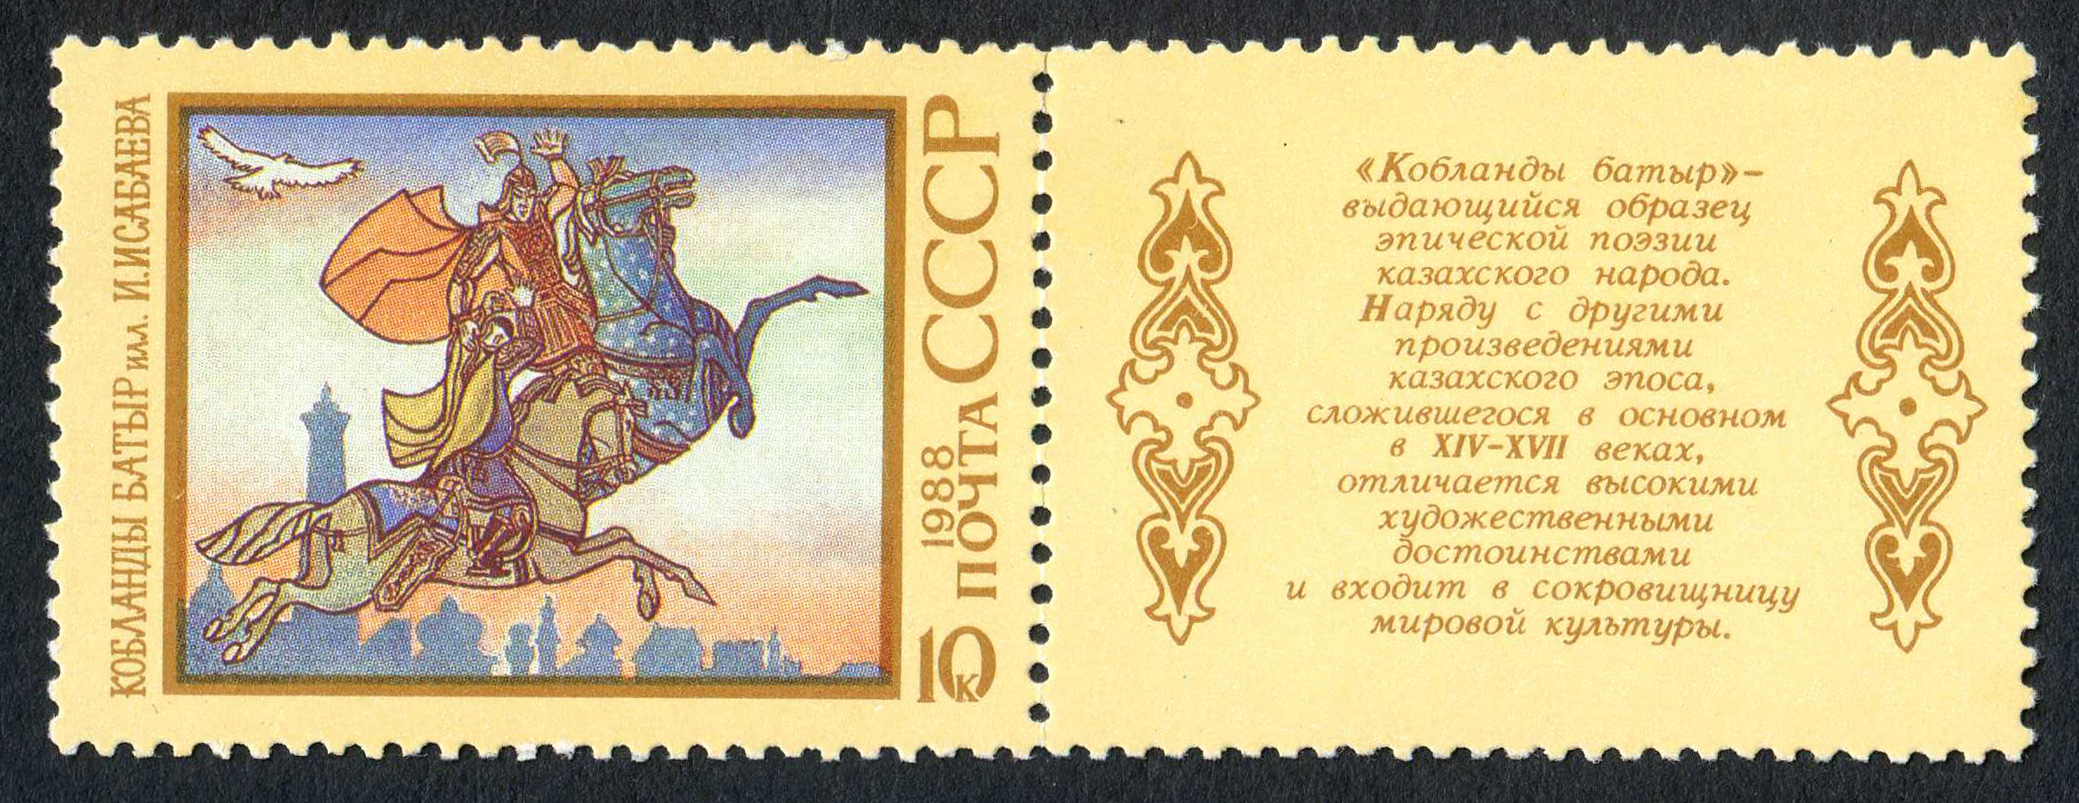 Каблянды батыр USSR stamp 1988